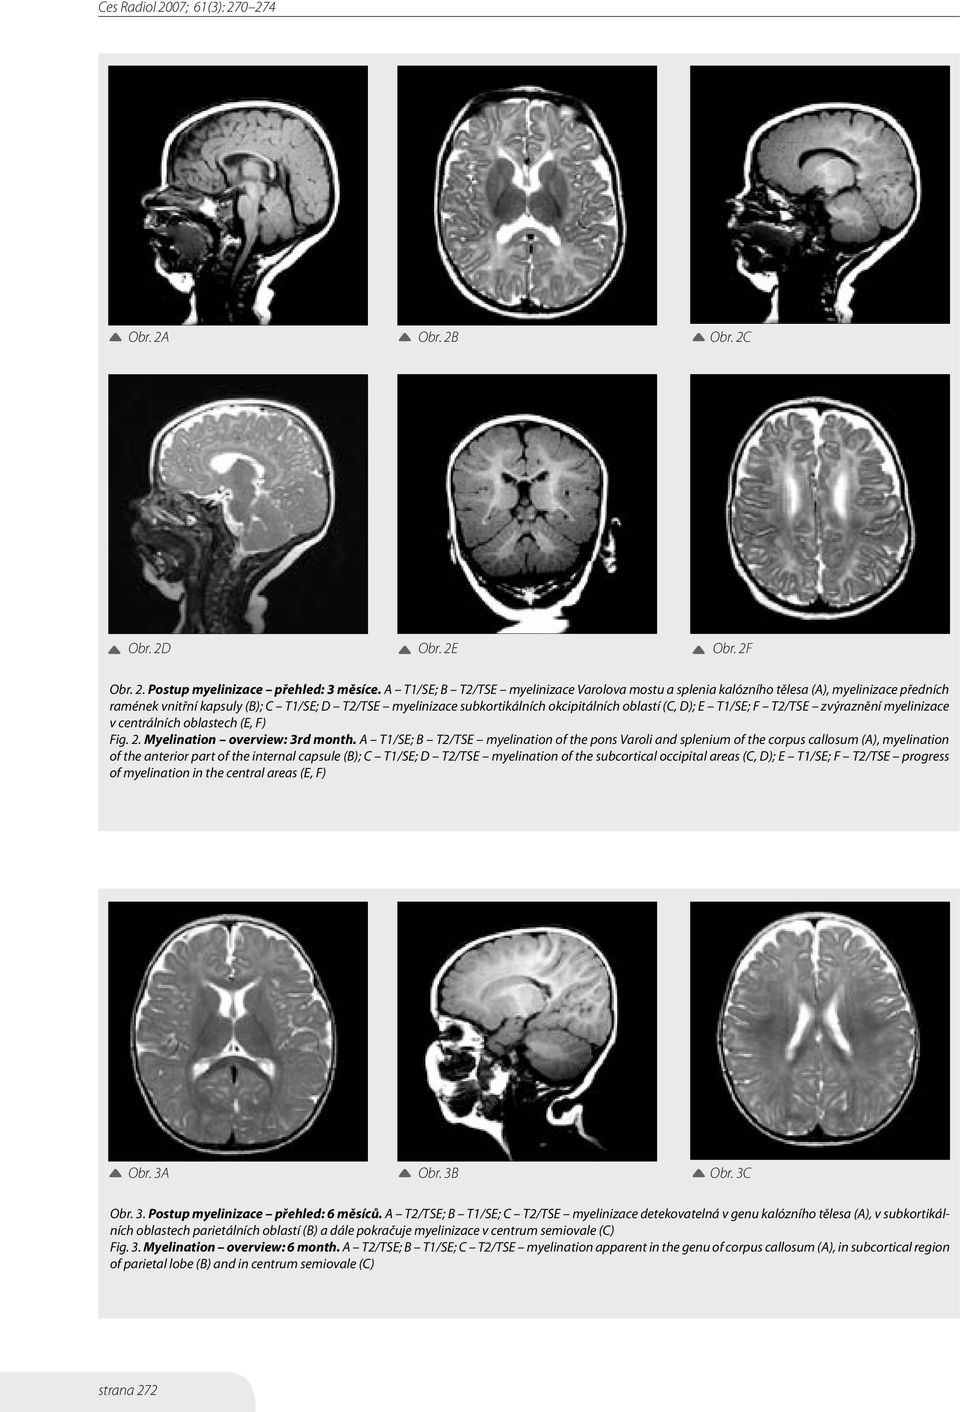 D); E T1/SE; F T2/TSE zvýraznění myelinizace v centrálních oblastech (E, F) Fig. 2. Myelination overview: 3rd month.